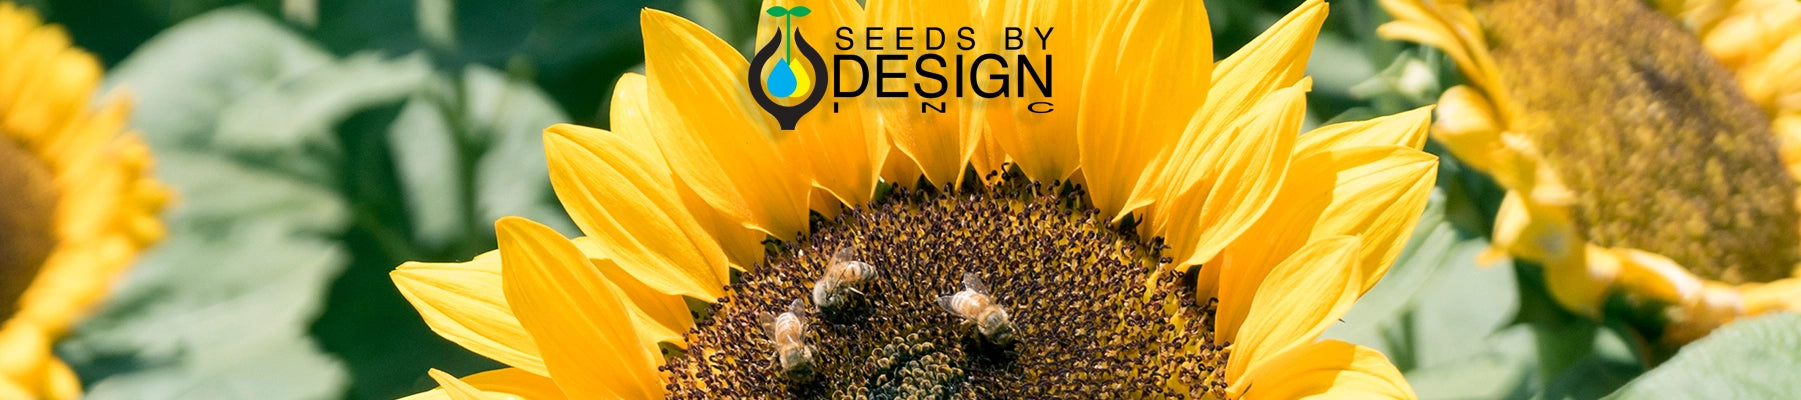 Banner //seedsbydesign.com/cdn/shop/t/22/assets/banner-sxd3-lg.webp?v=7388827203931865131709315320